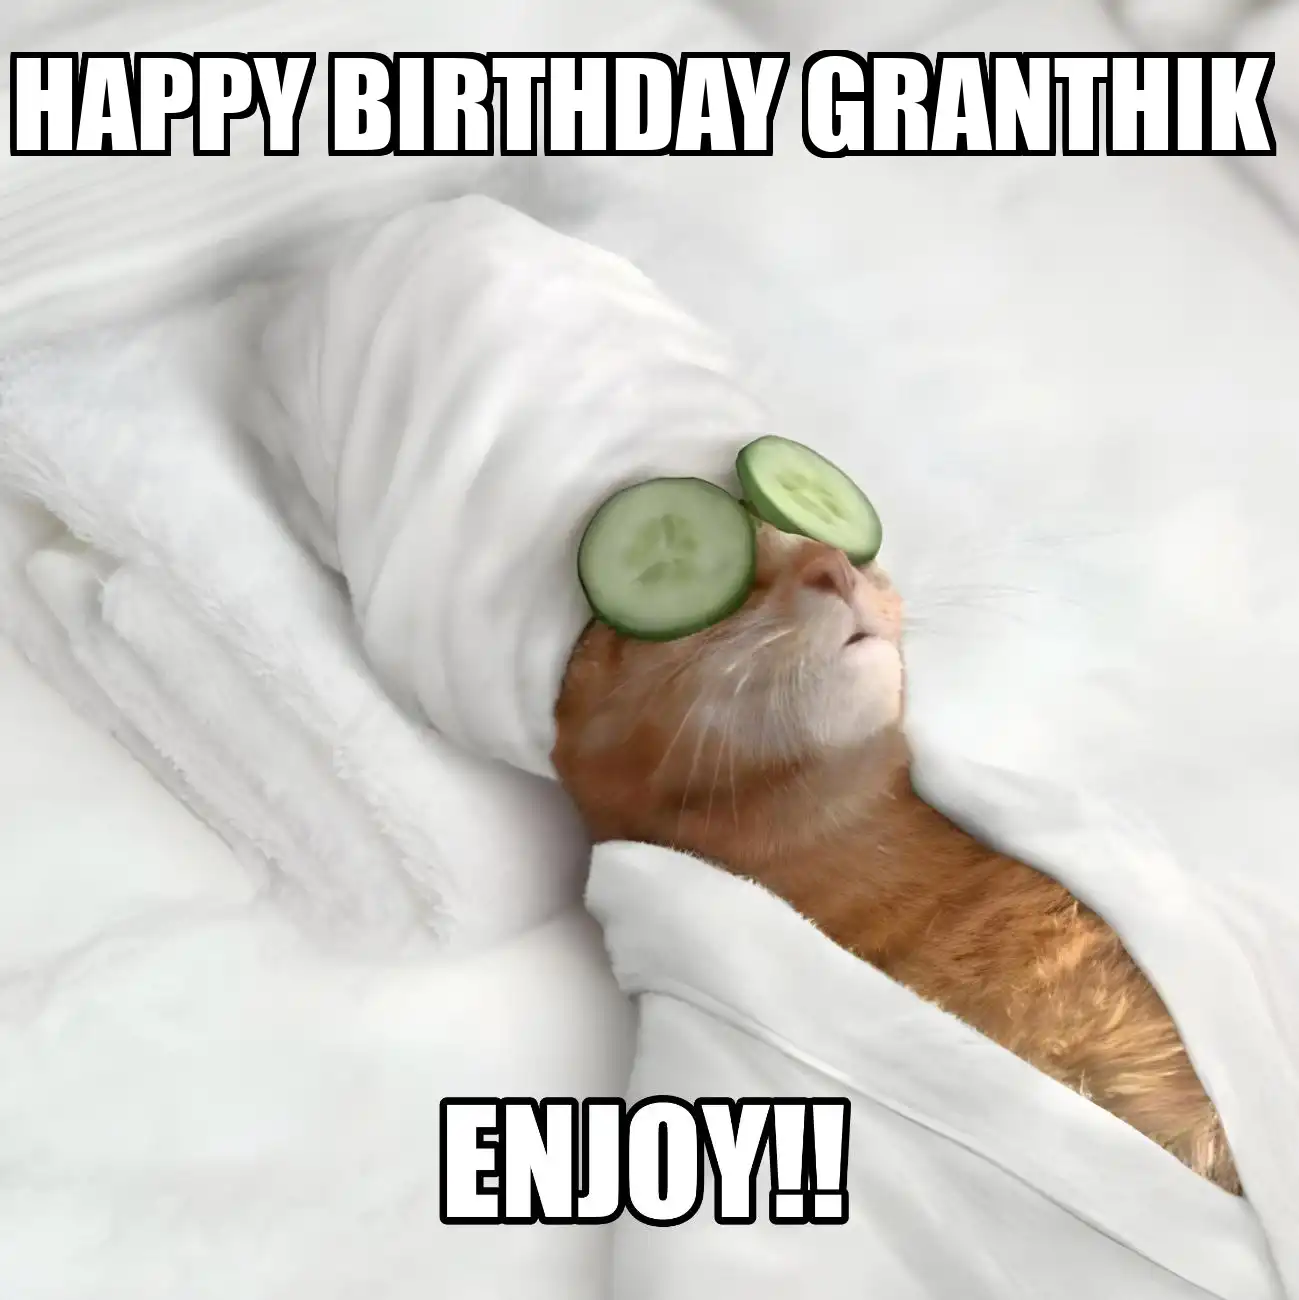 Happy Birthday Granthik Enjoy Cat Meme